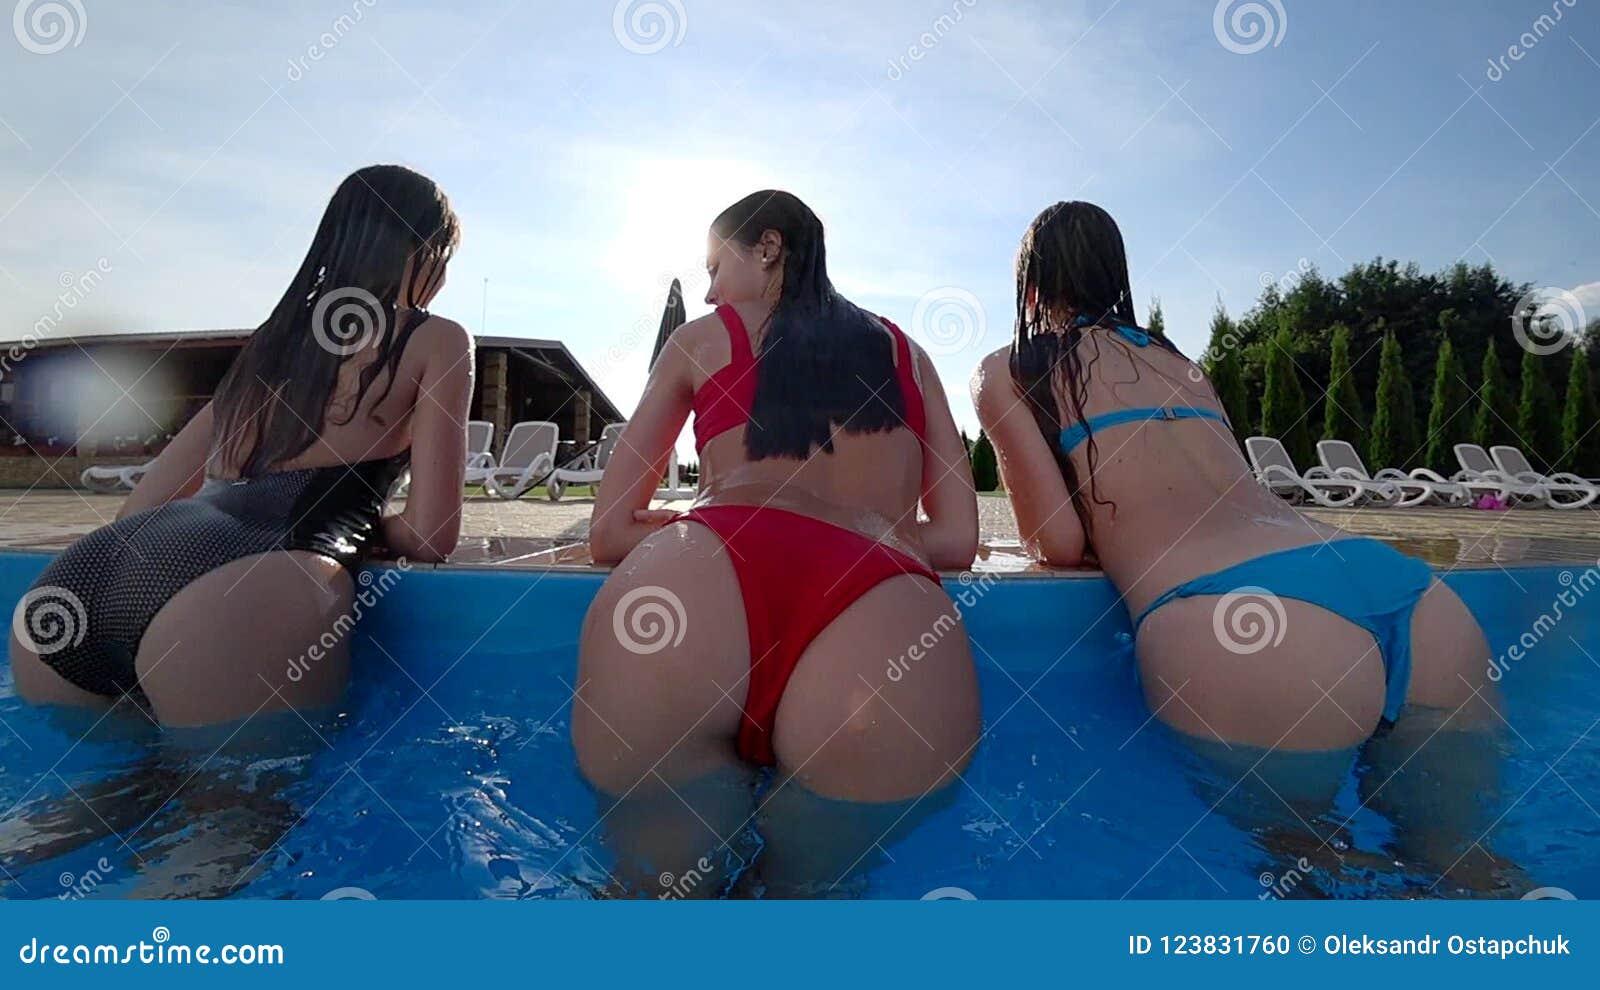 Girls at water park ass